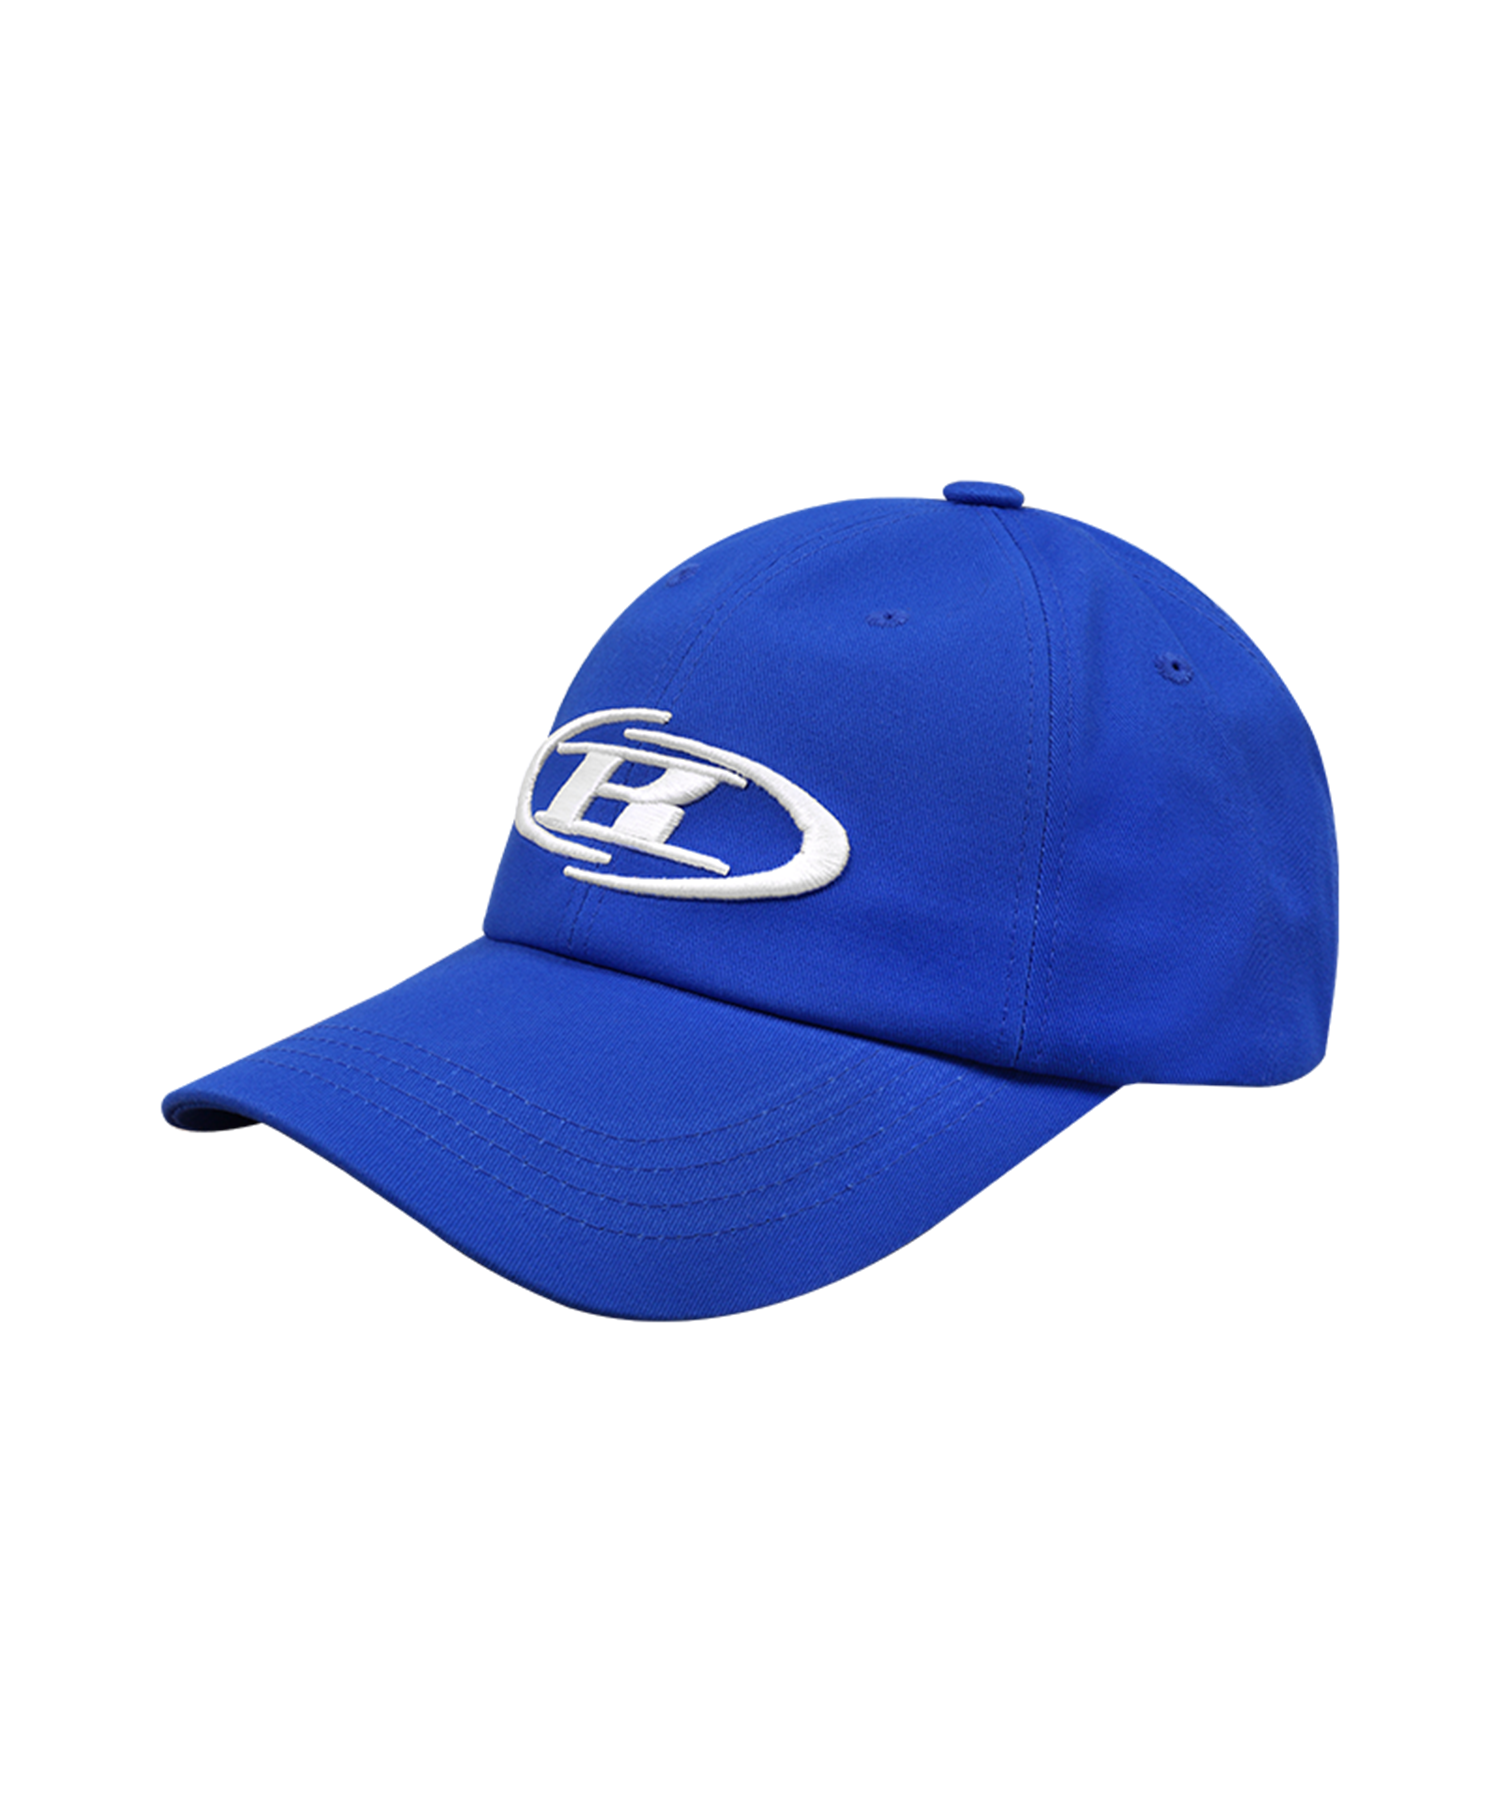 B SYMBOL BIG LOGO BALL CAP [BLUE]